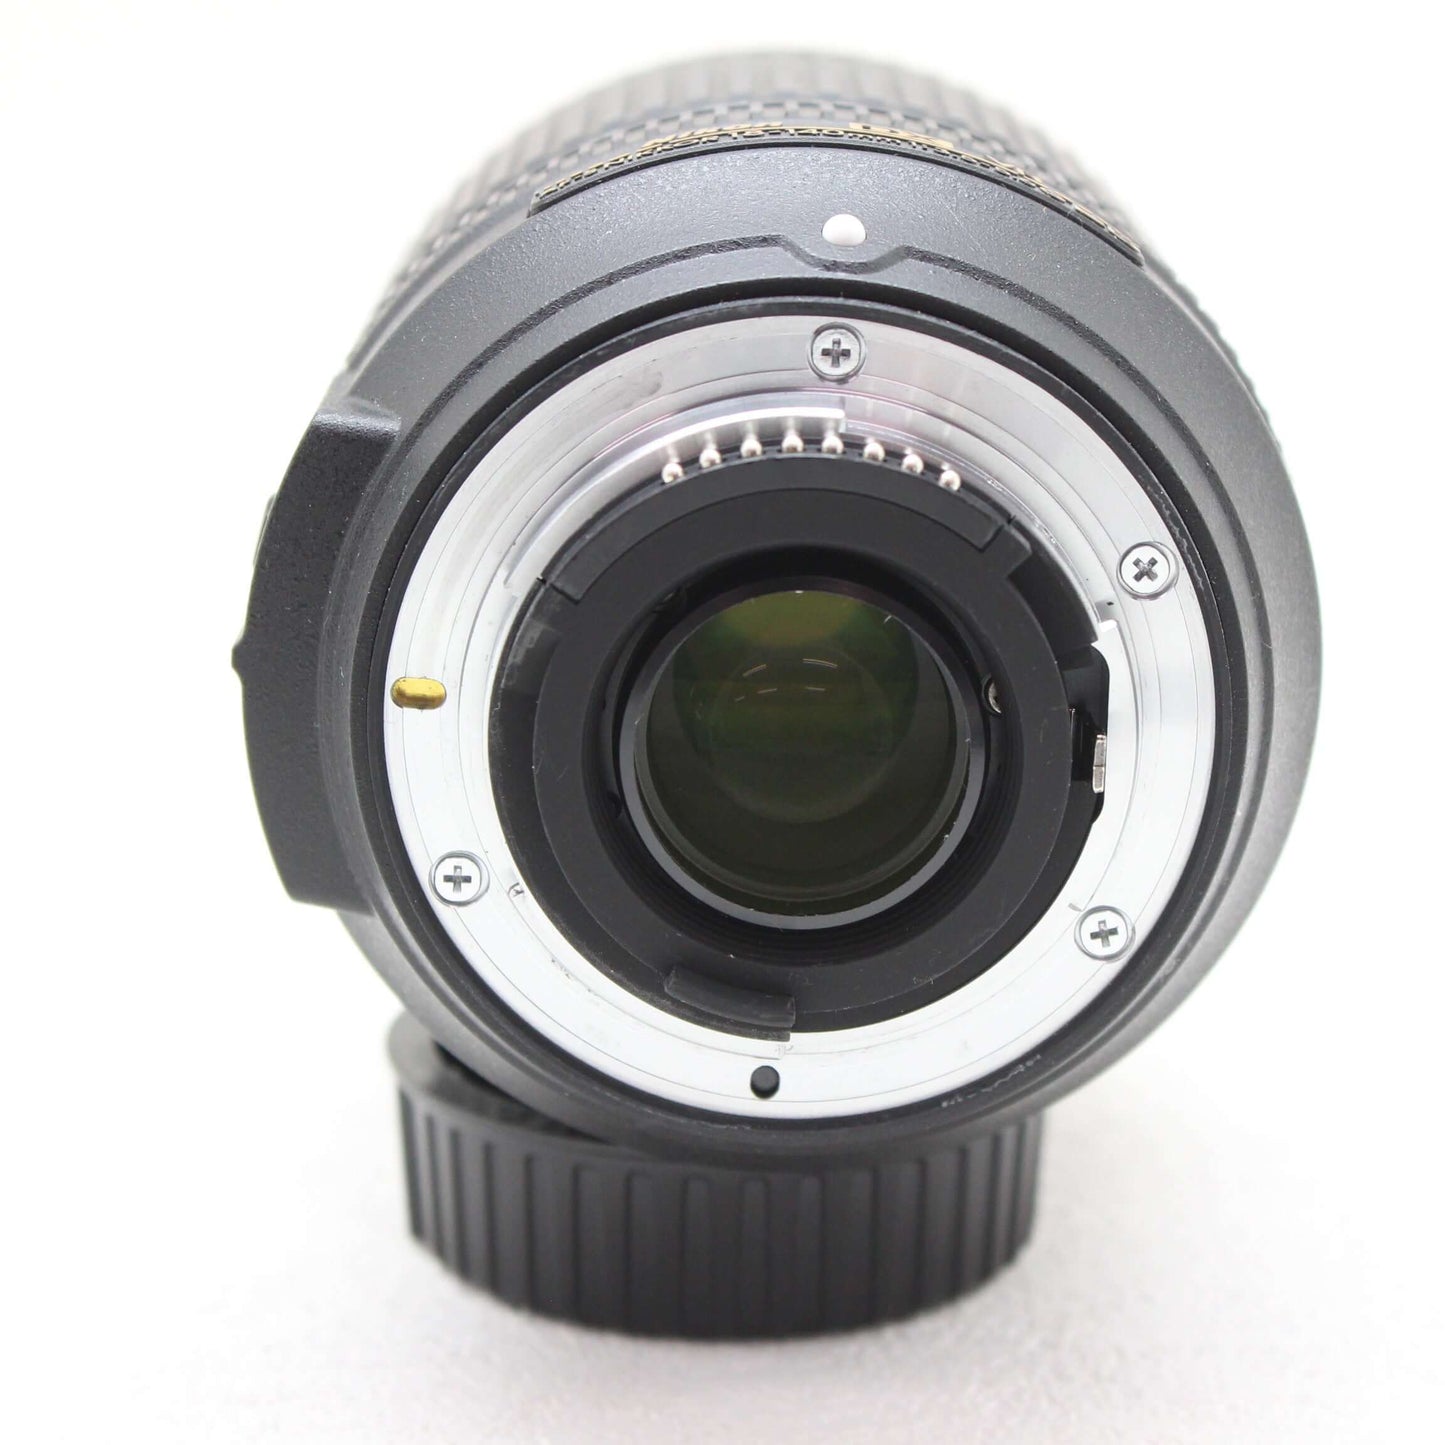 中古品 Nikon AF-S DX 18-140mm F3.5-5.6G ED VR